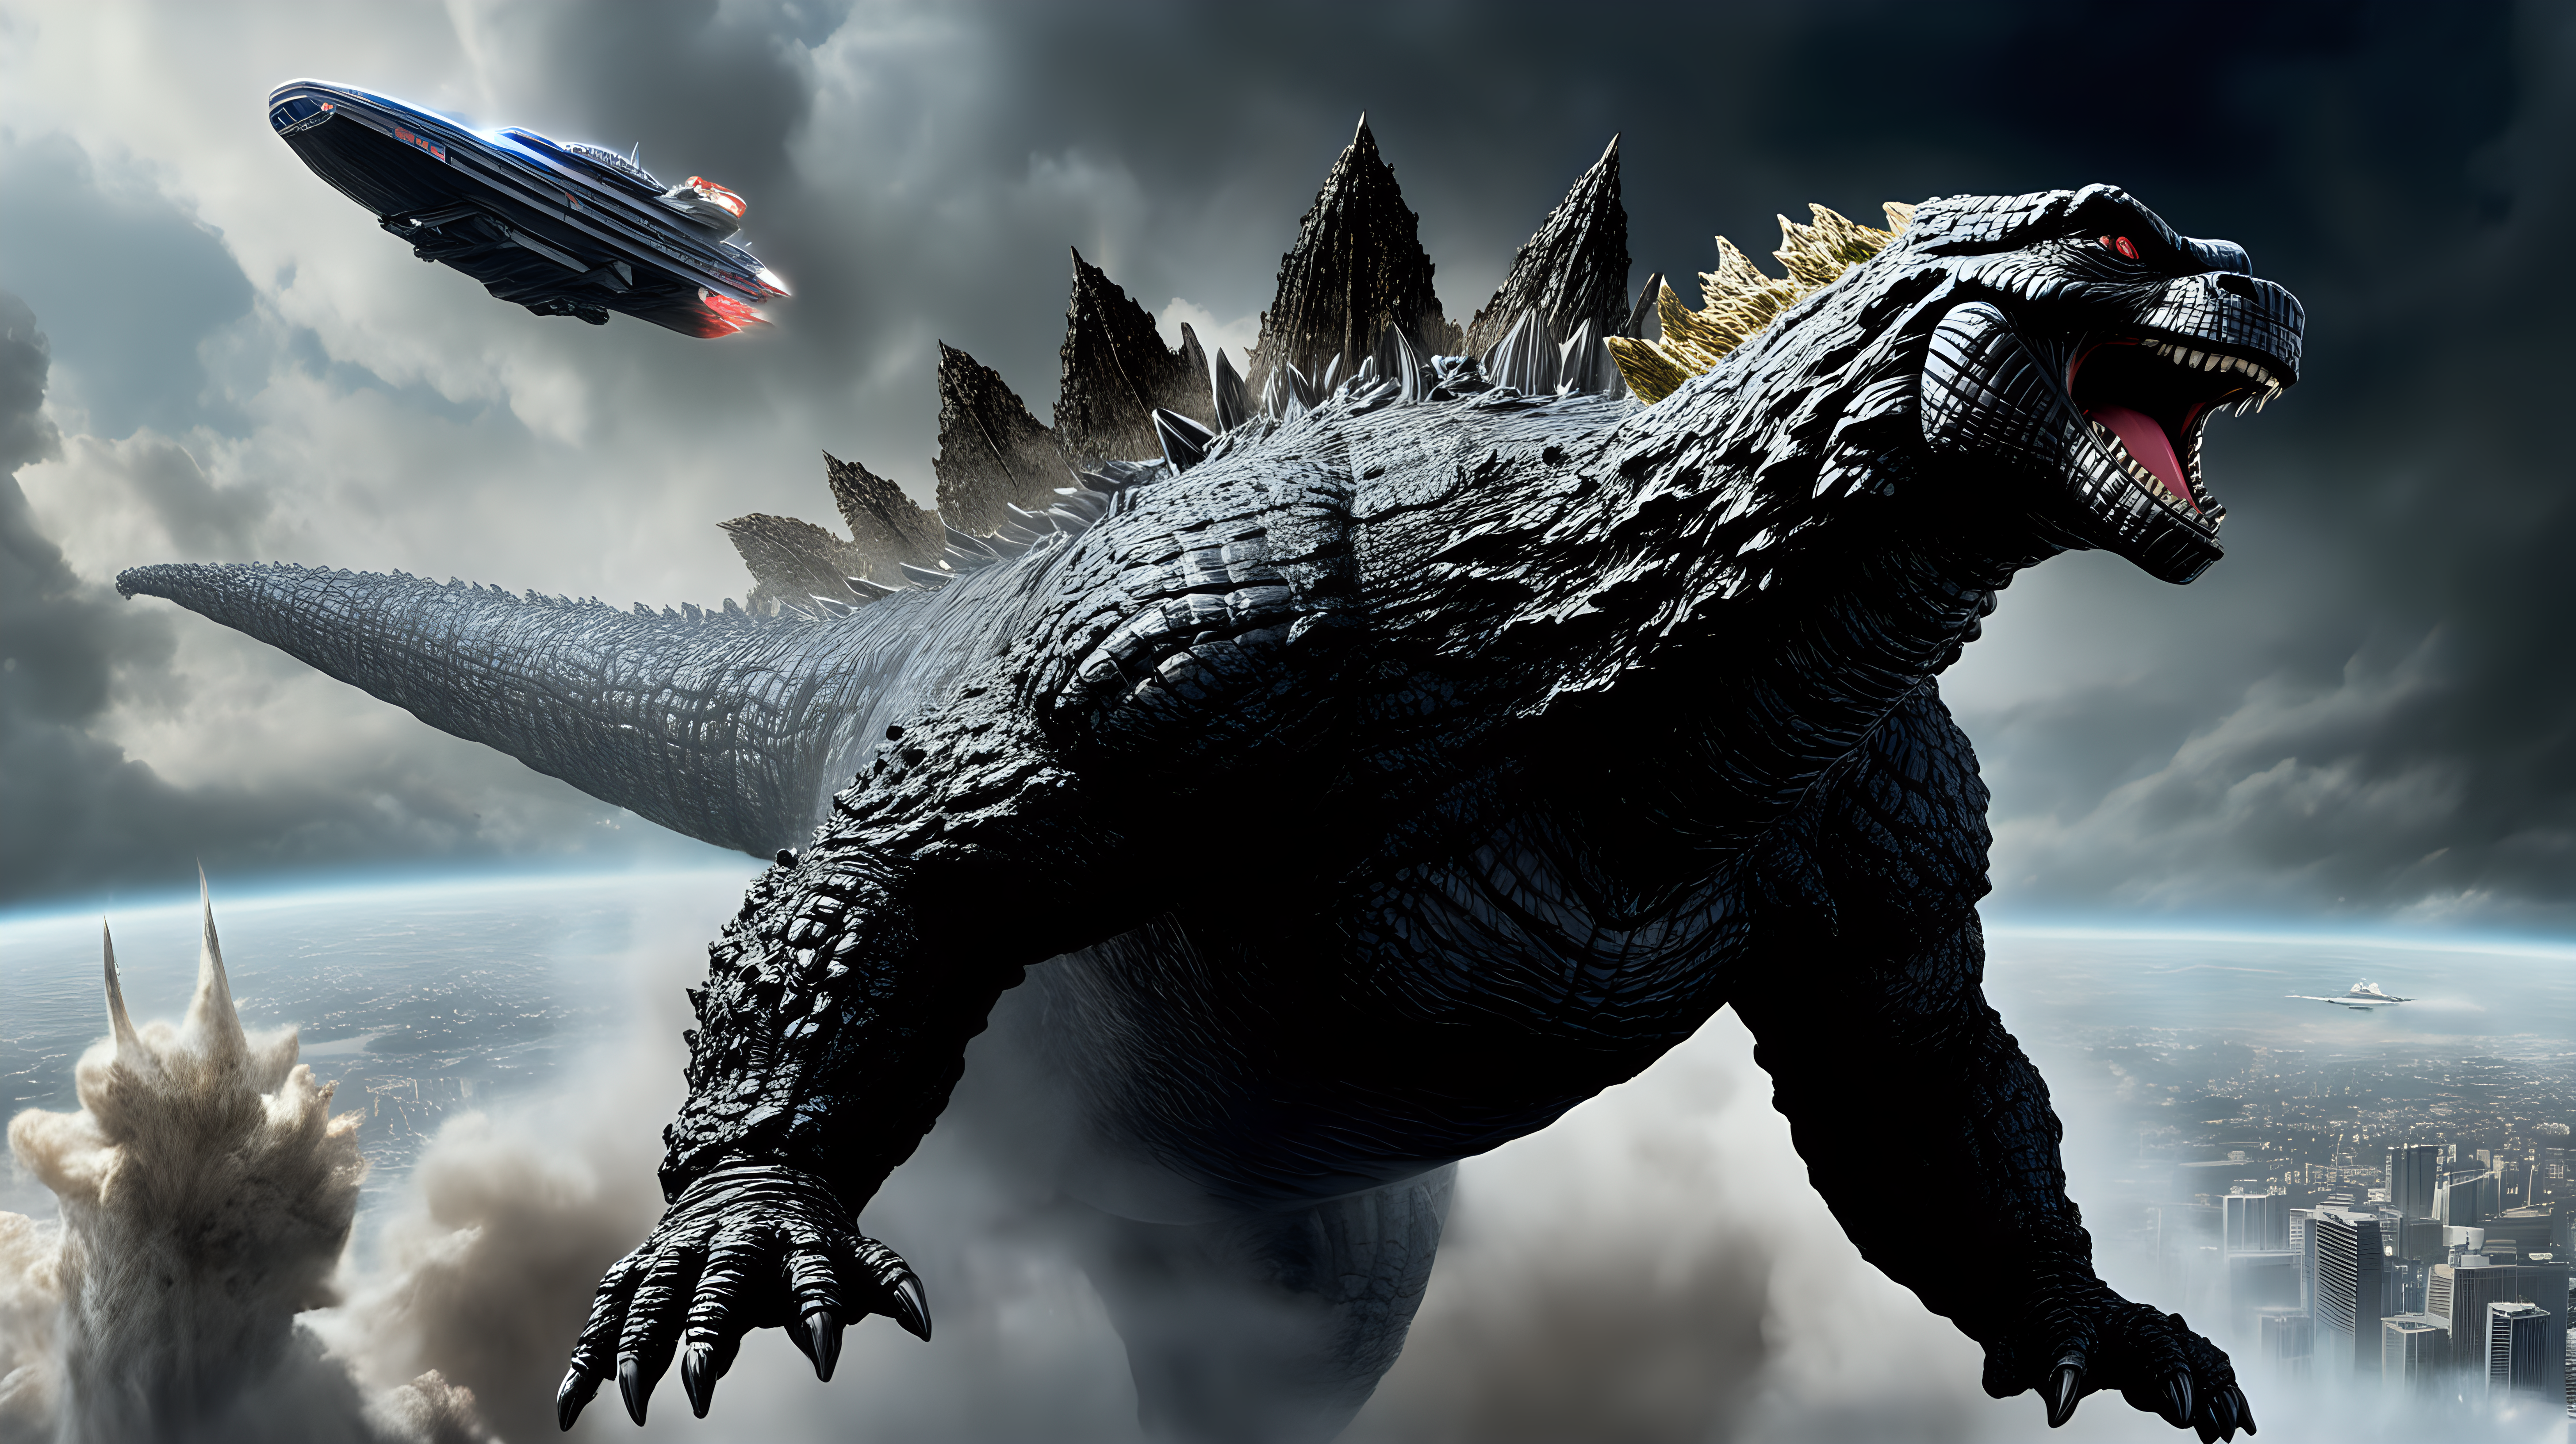 Godzilla flying a spaceship